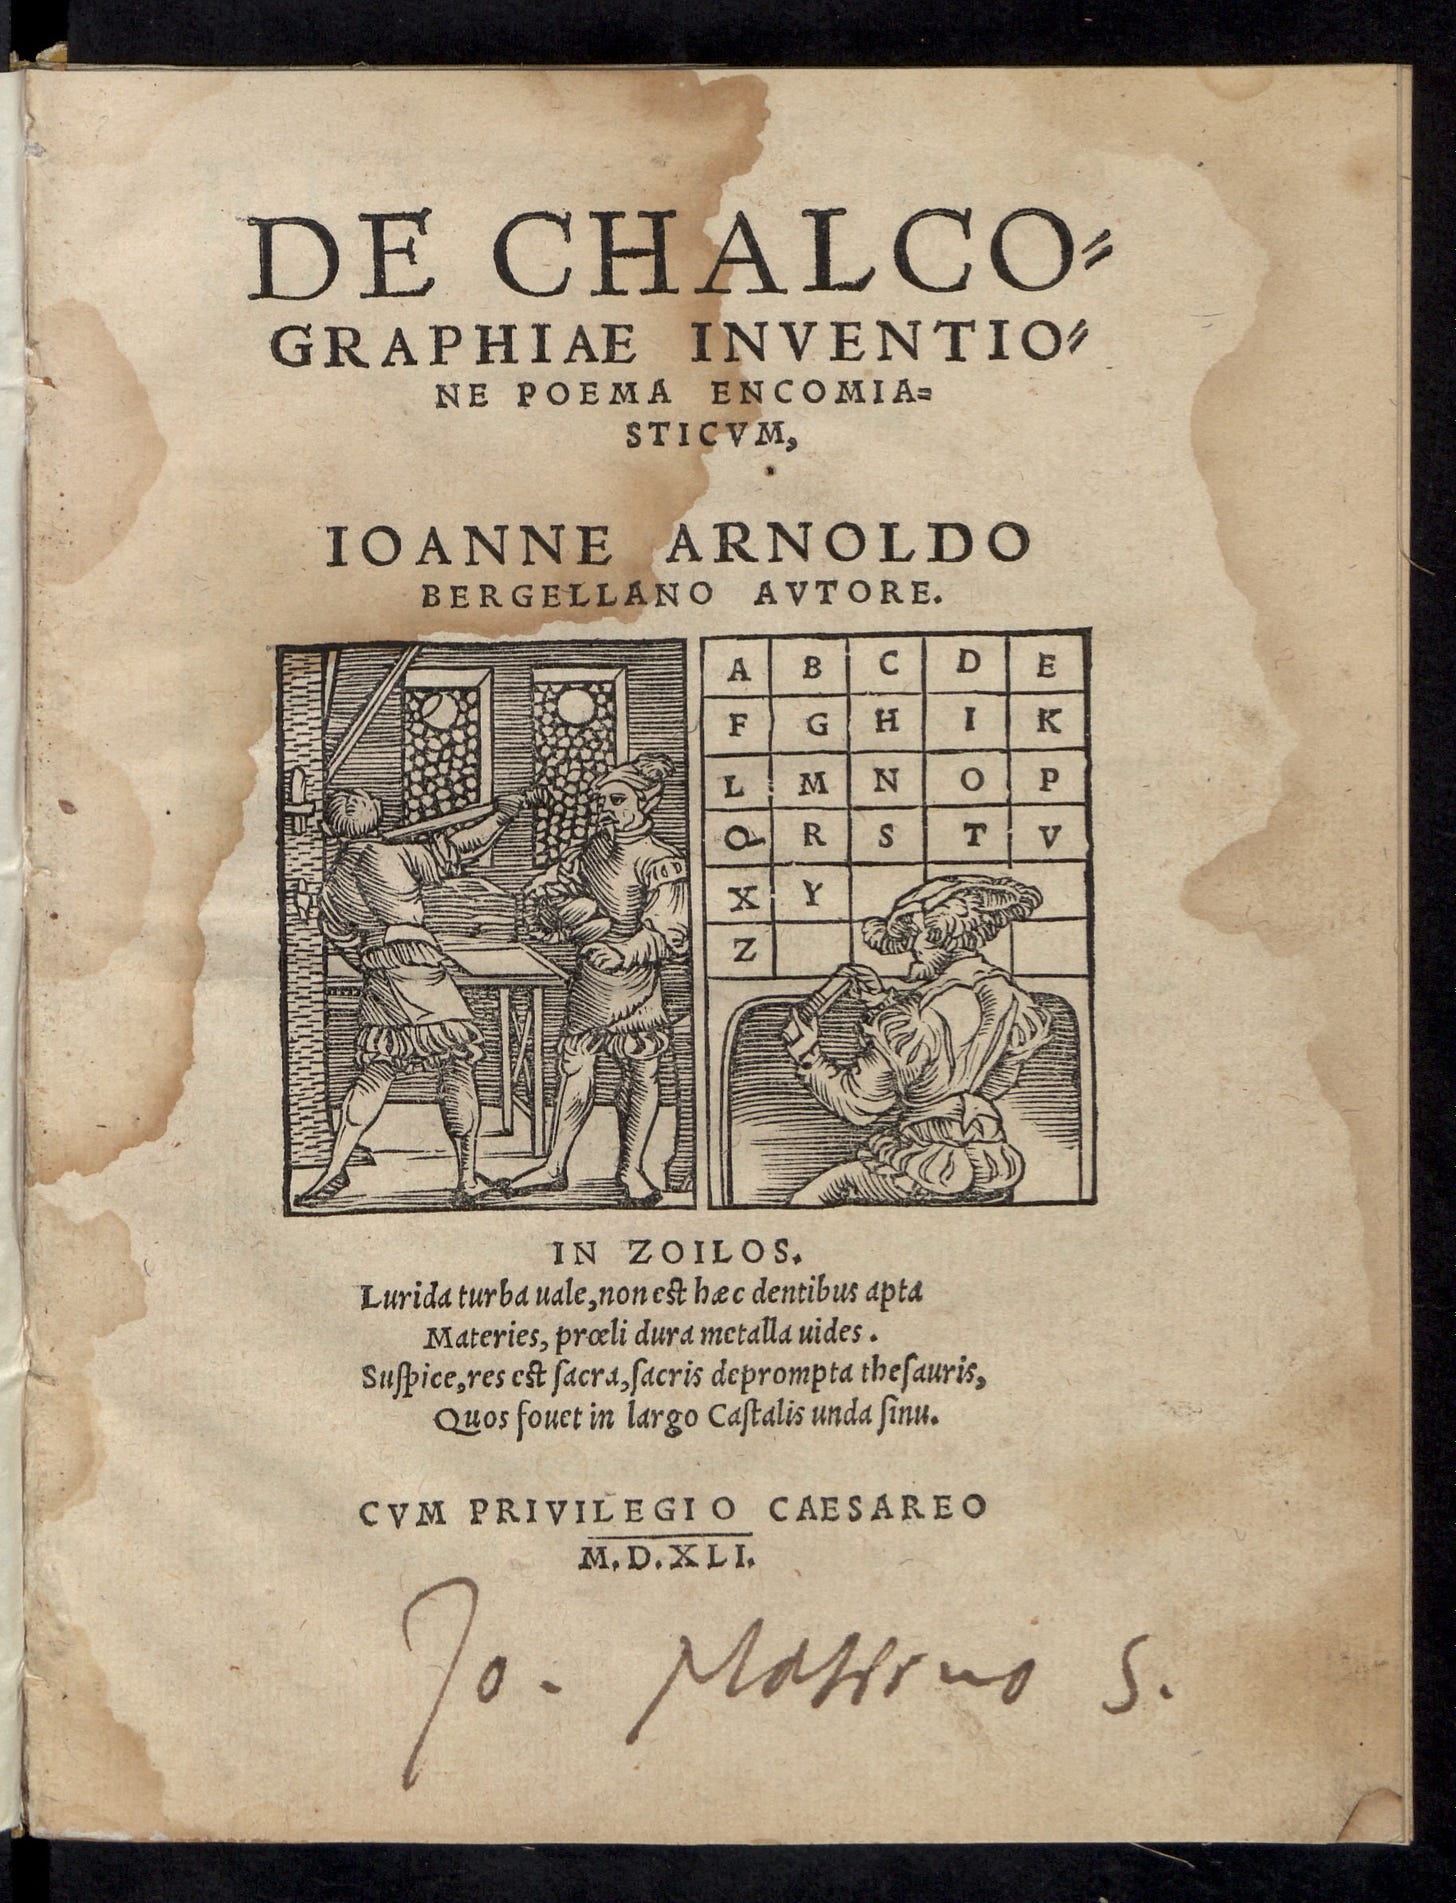 Capa de De chalcographiae inventione poema encomiasticum, livro de Johannes Arnold, impresso em Mainz, 1541. Nota-se a ausência das letras J, U e W na gravura da caixa de tipos.